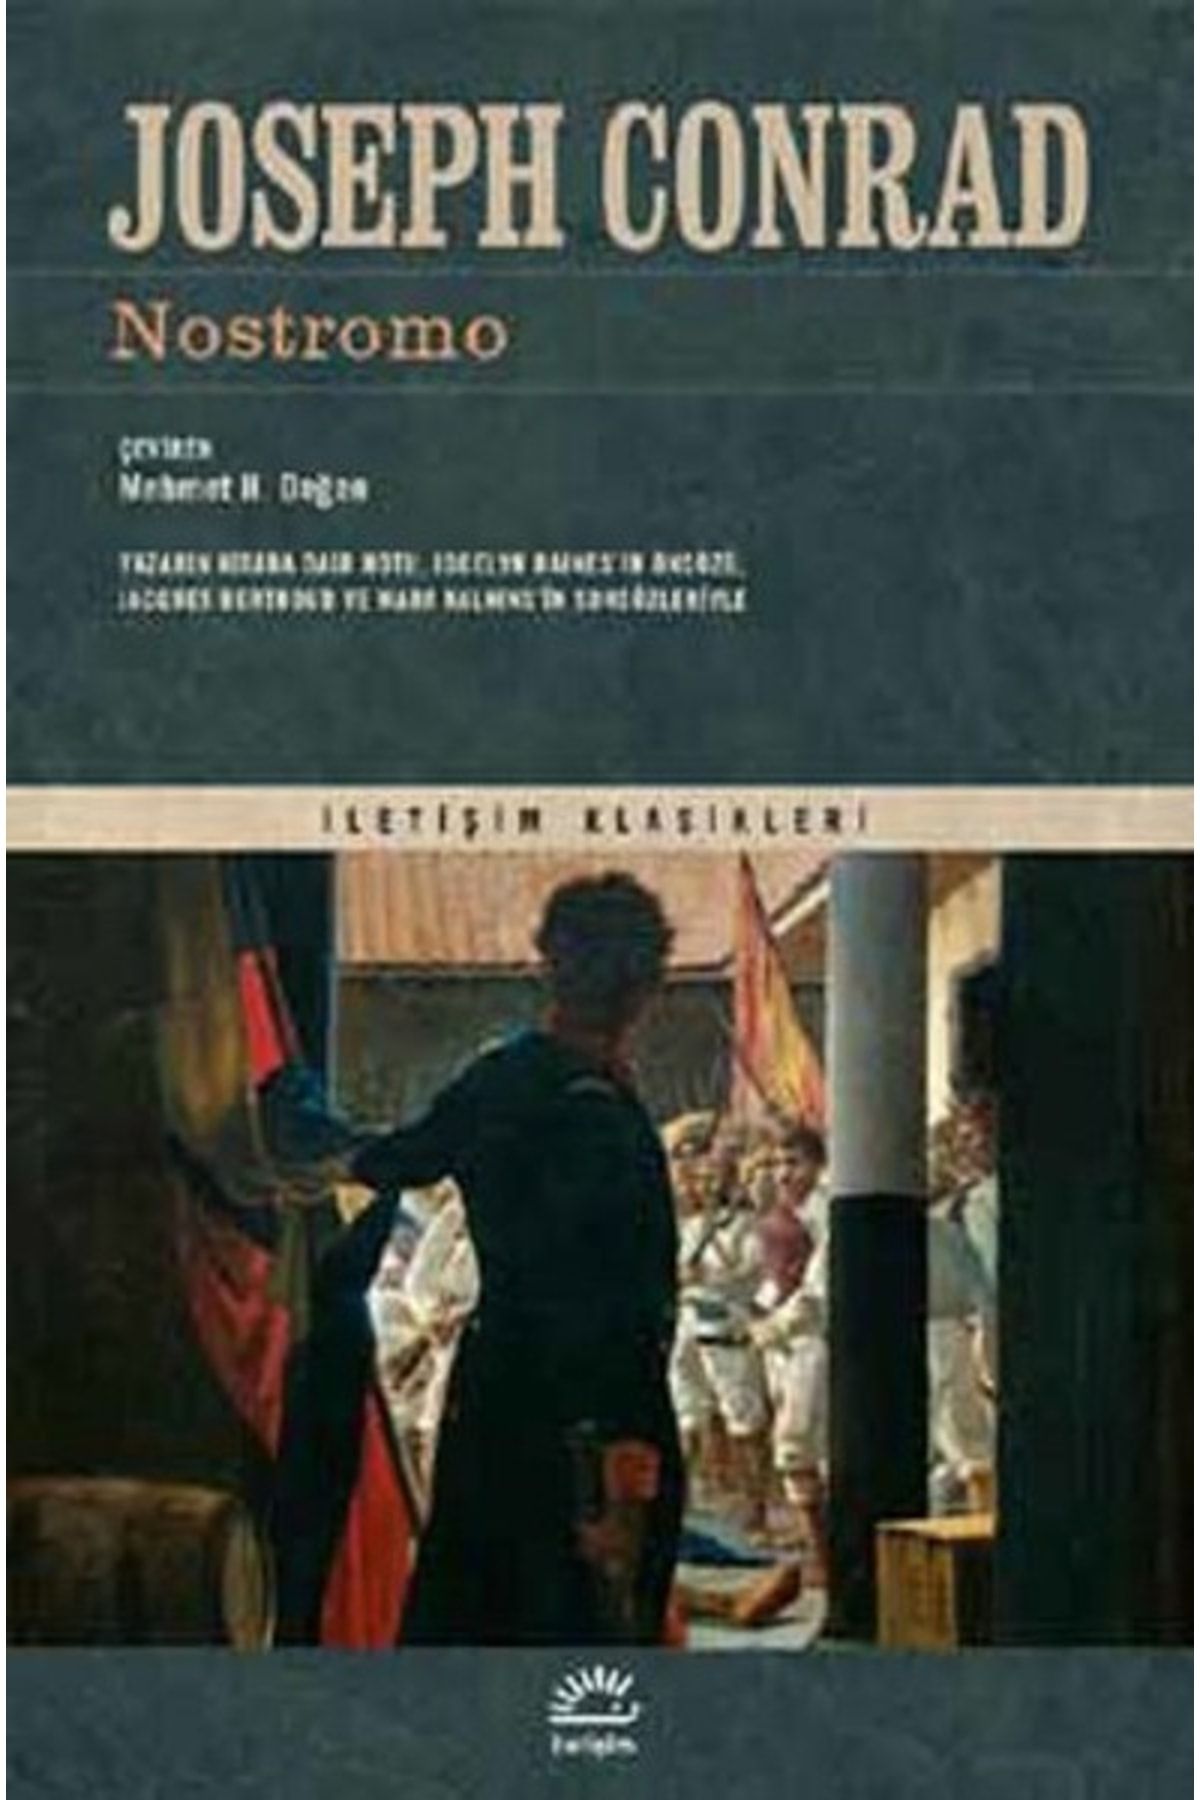 İletişim Yayınları Nostromo, Joseph Conrad, Iletişim Yayınları, Nostromo Kitabı, 547 Sayfa